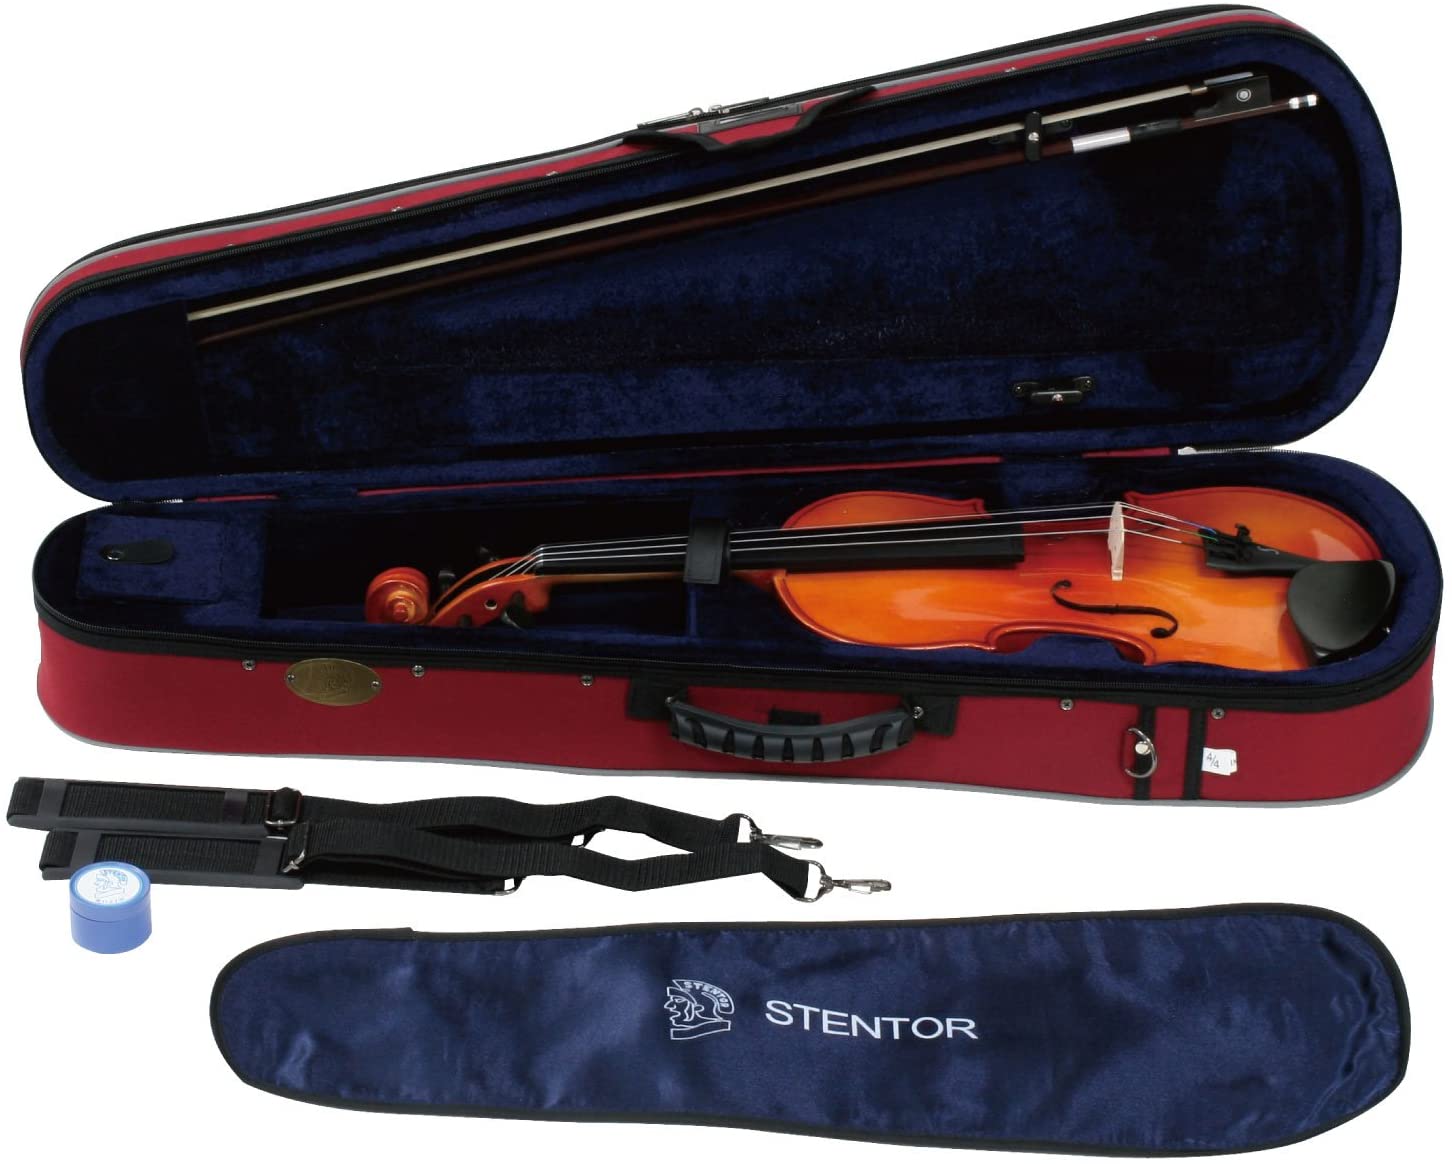 Violon Prima P200 4/4 : violon d'étude bois massif